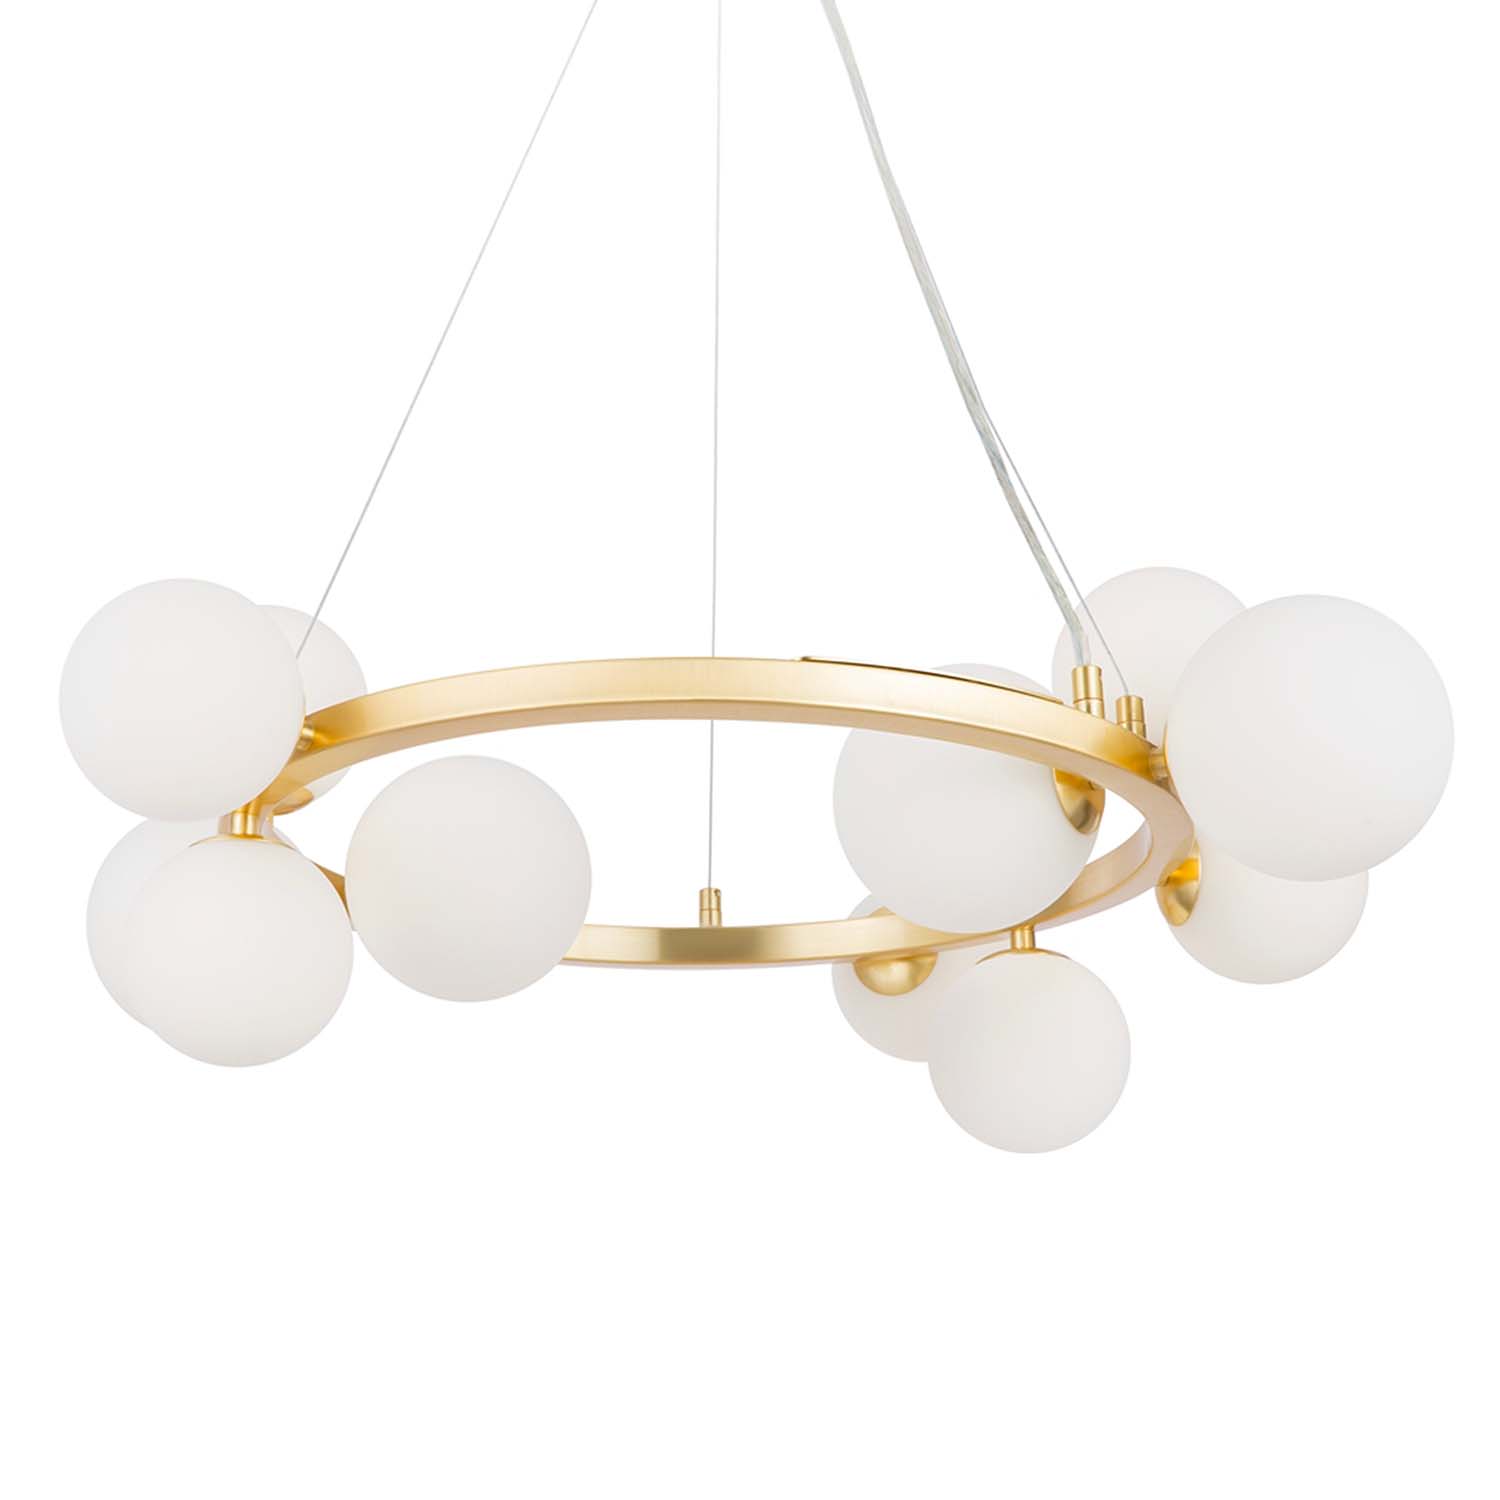 DALLAS - Round chandelier with modern glass balls